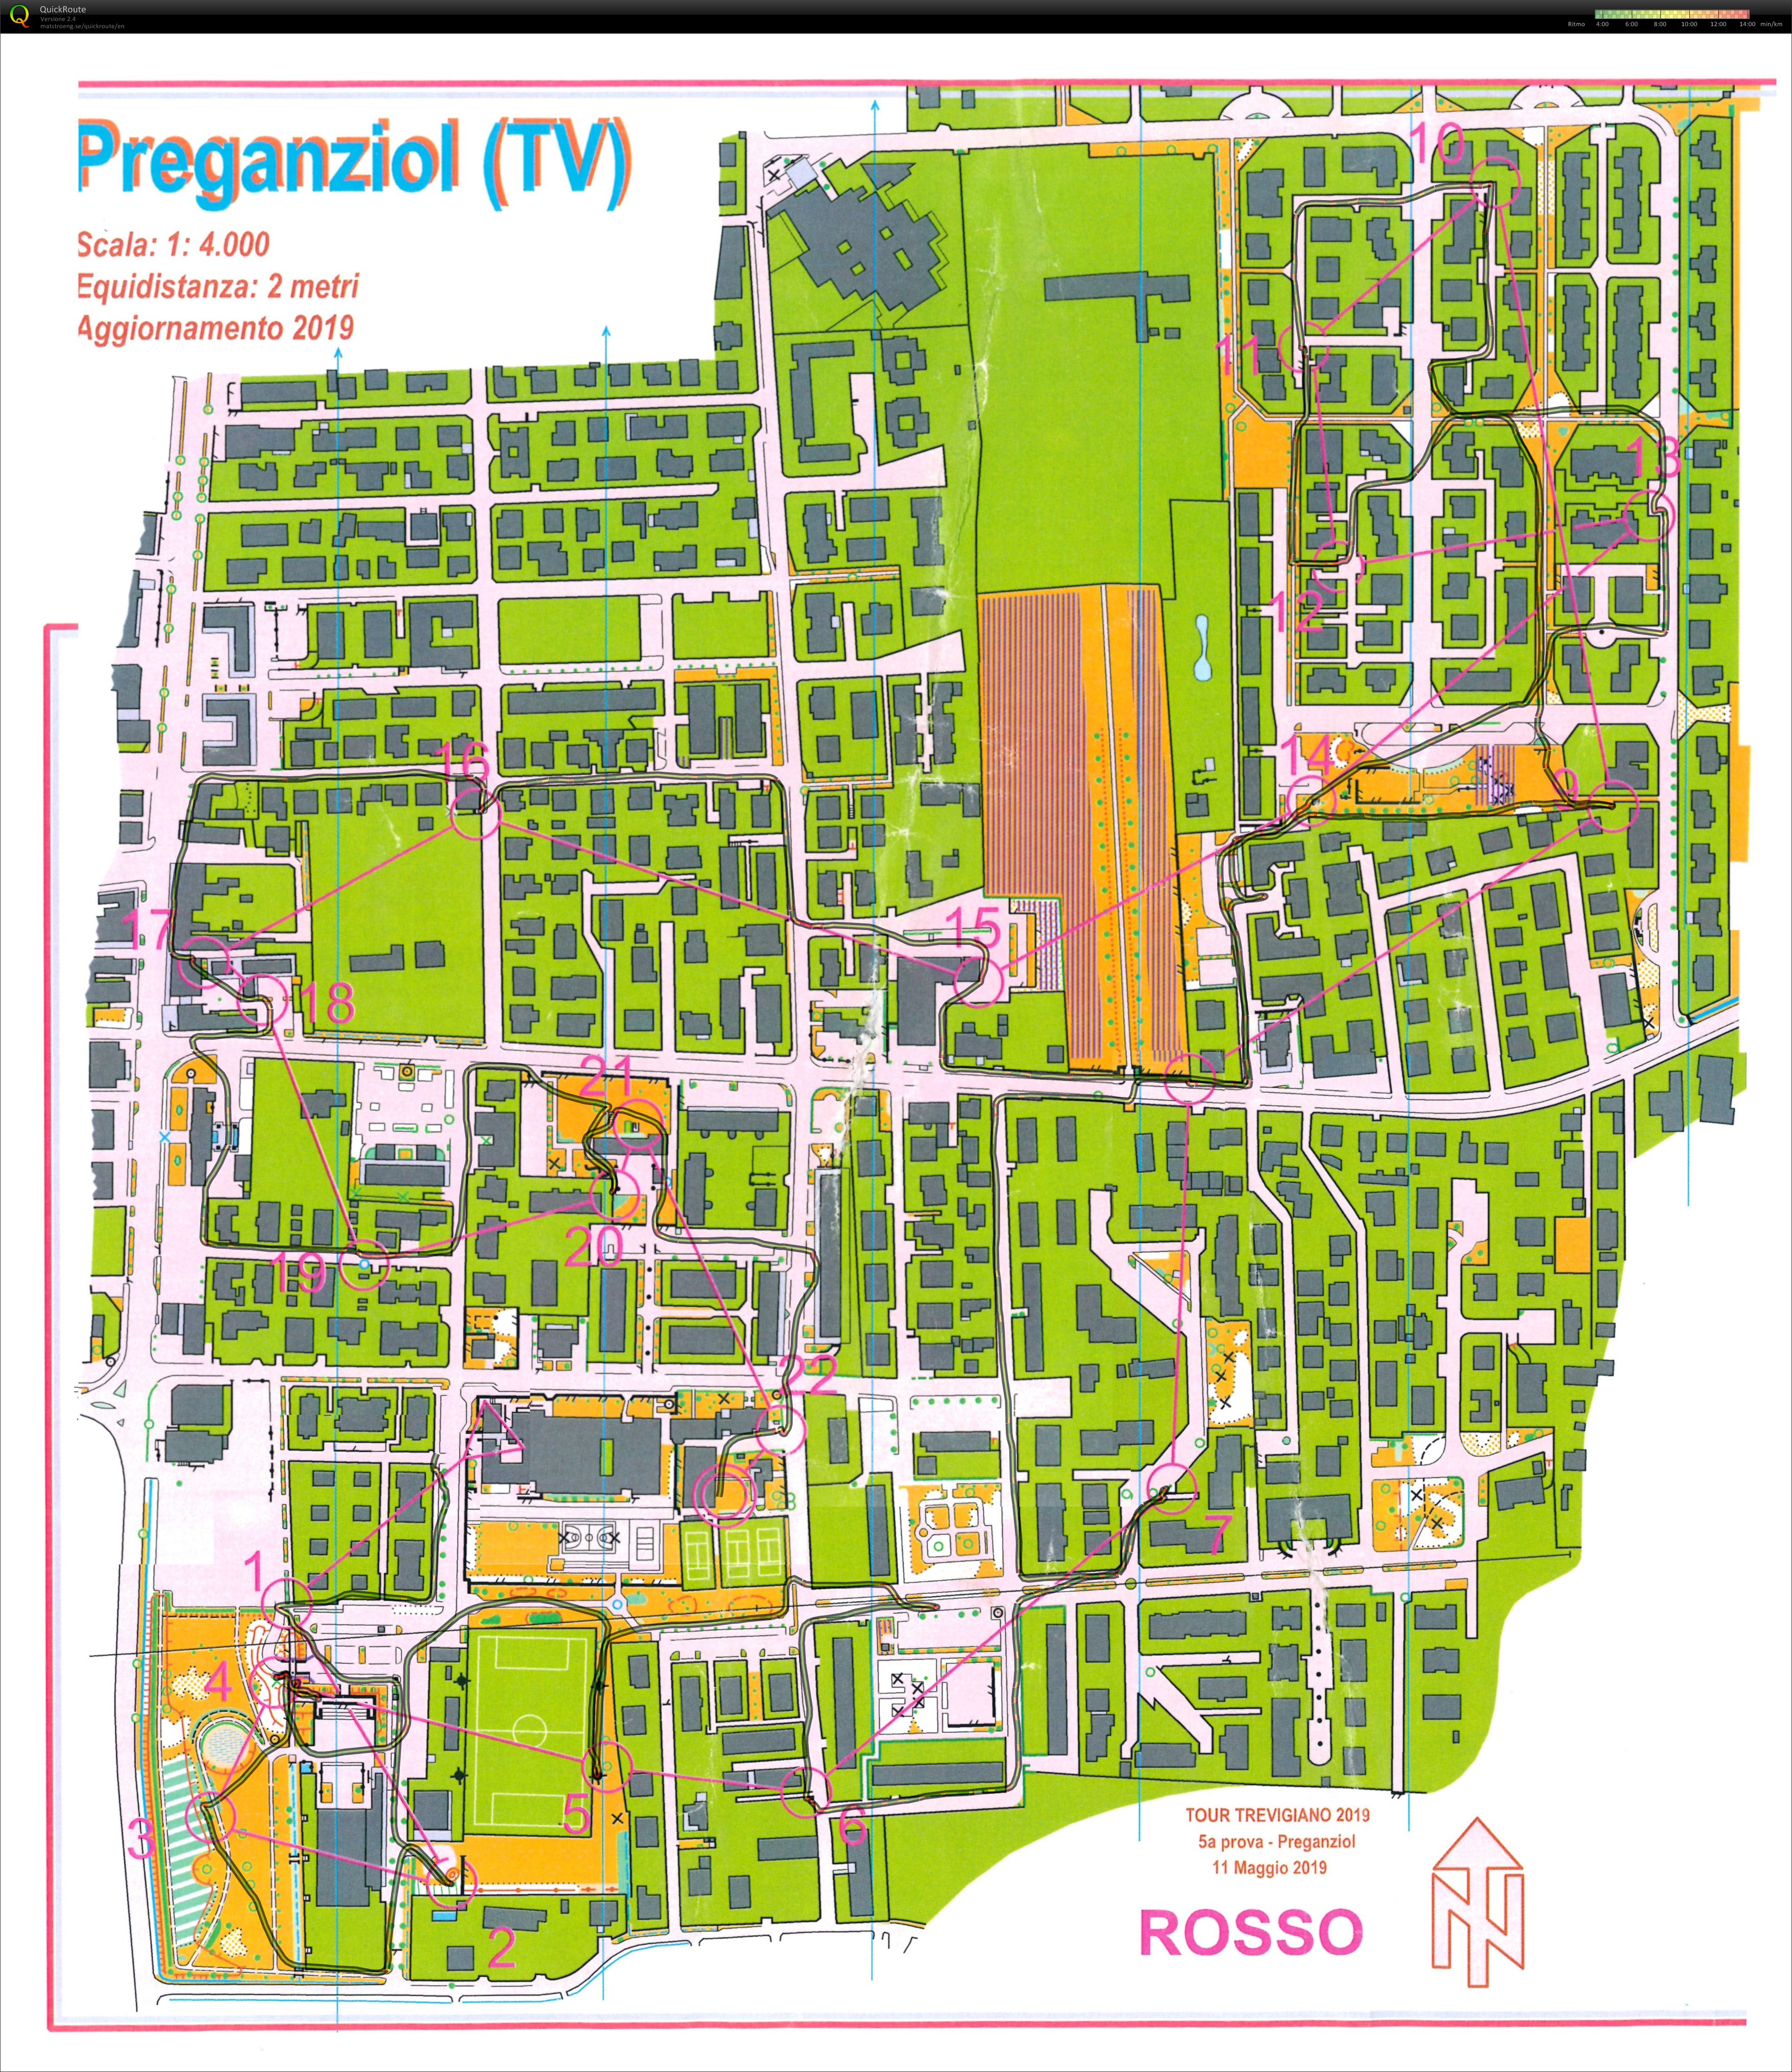 Preganziol - 5 prova o-tour Trevigiano 2019 (11.05.2019)